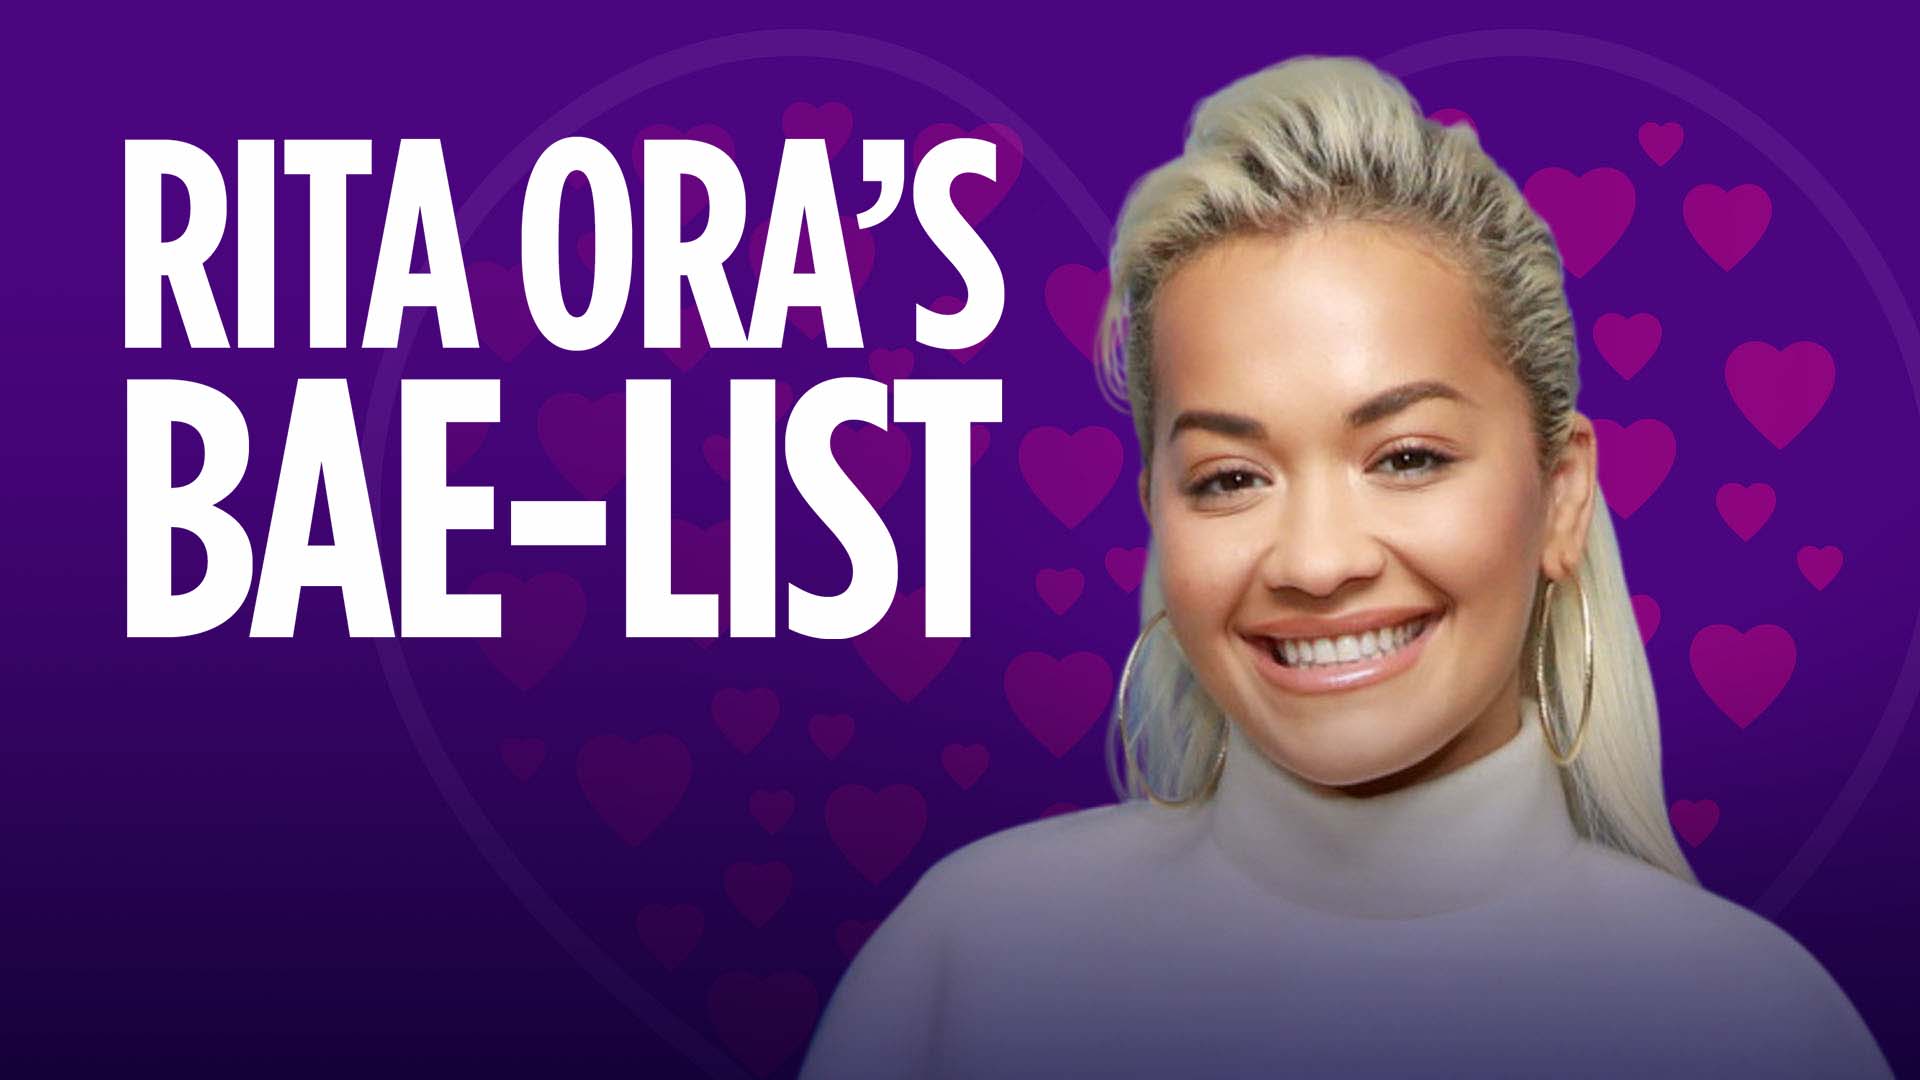 Rita Ora's Bae List